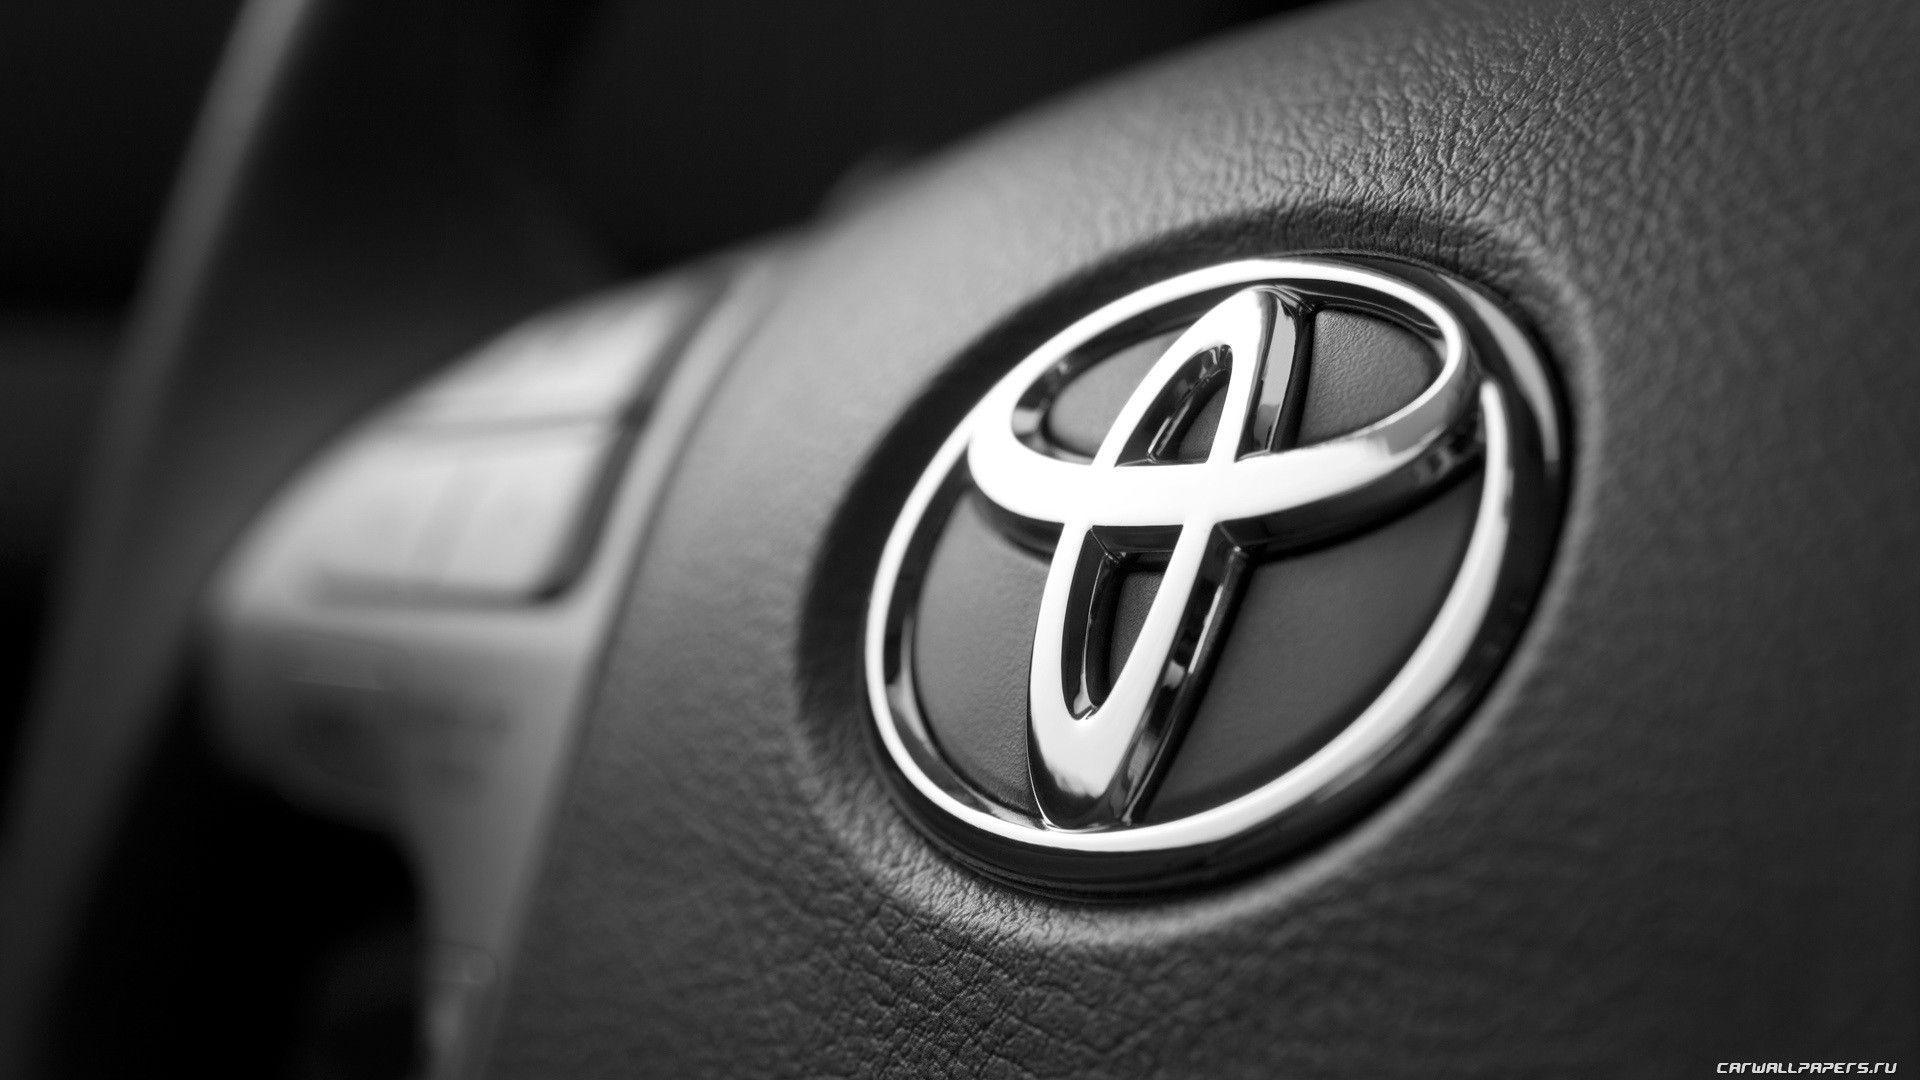 Toyota heya 2026an 10 cûre erebên elektrîkî hildiberîne